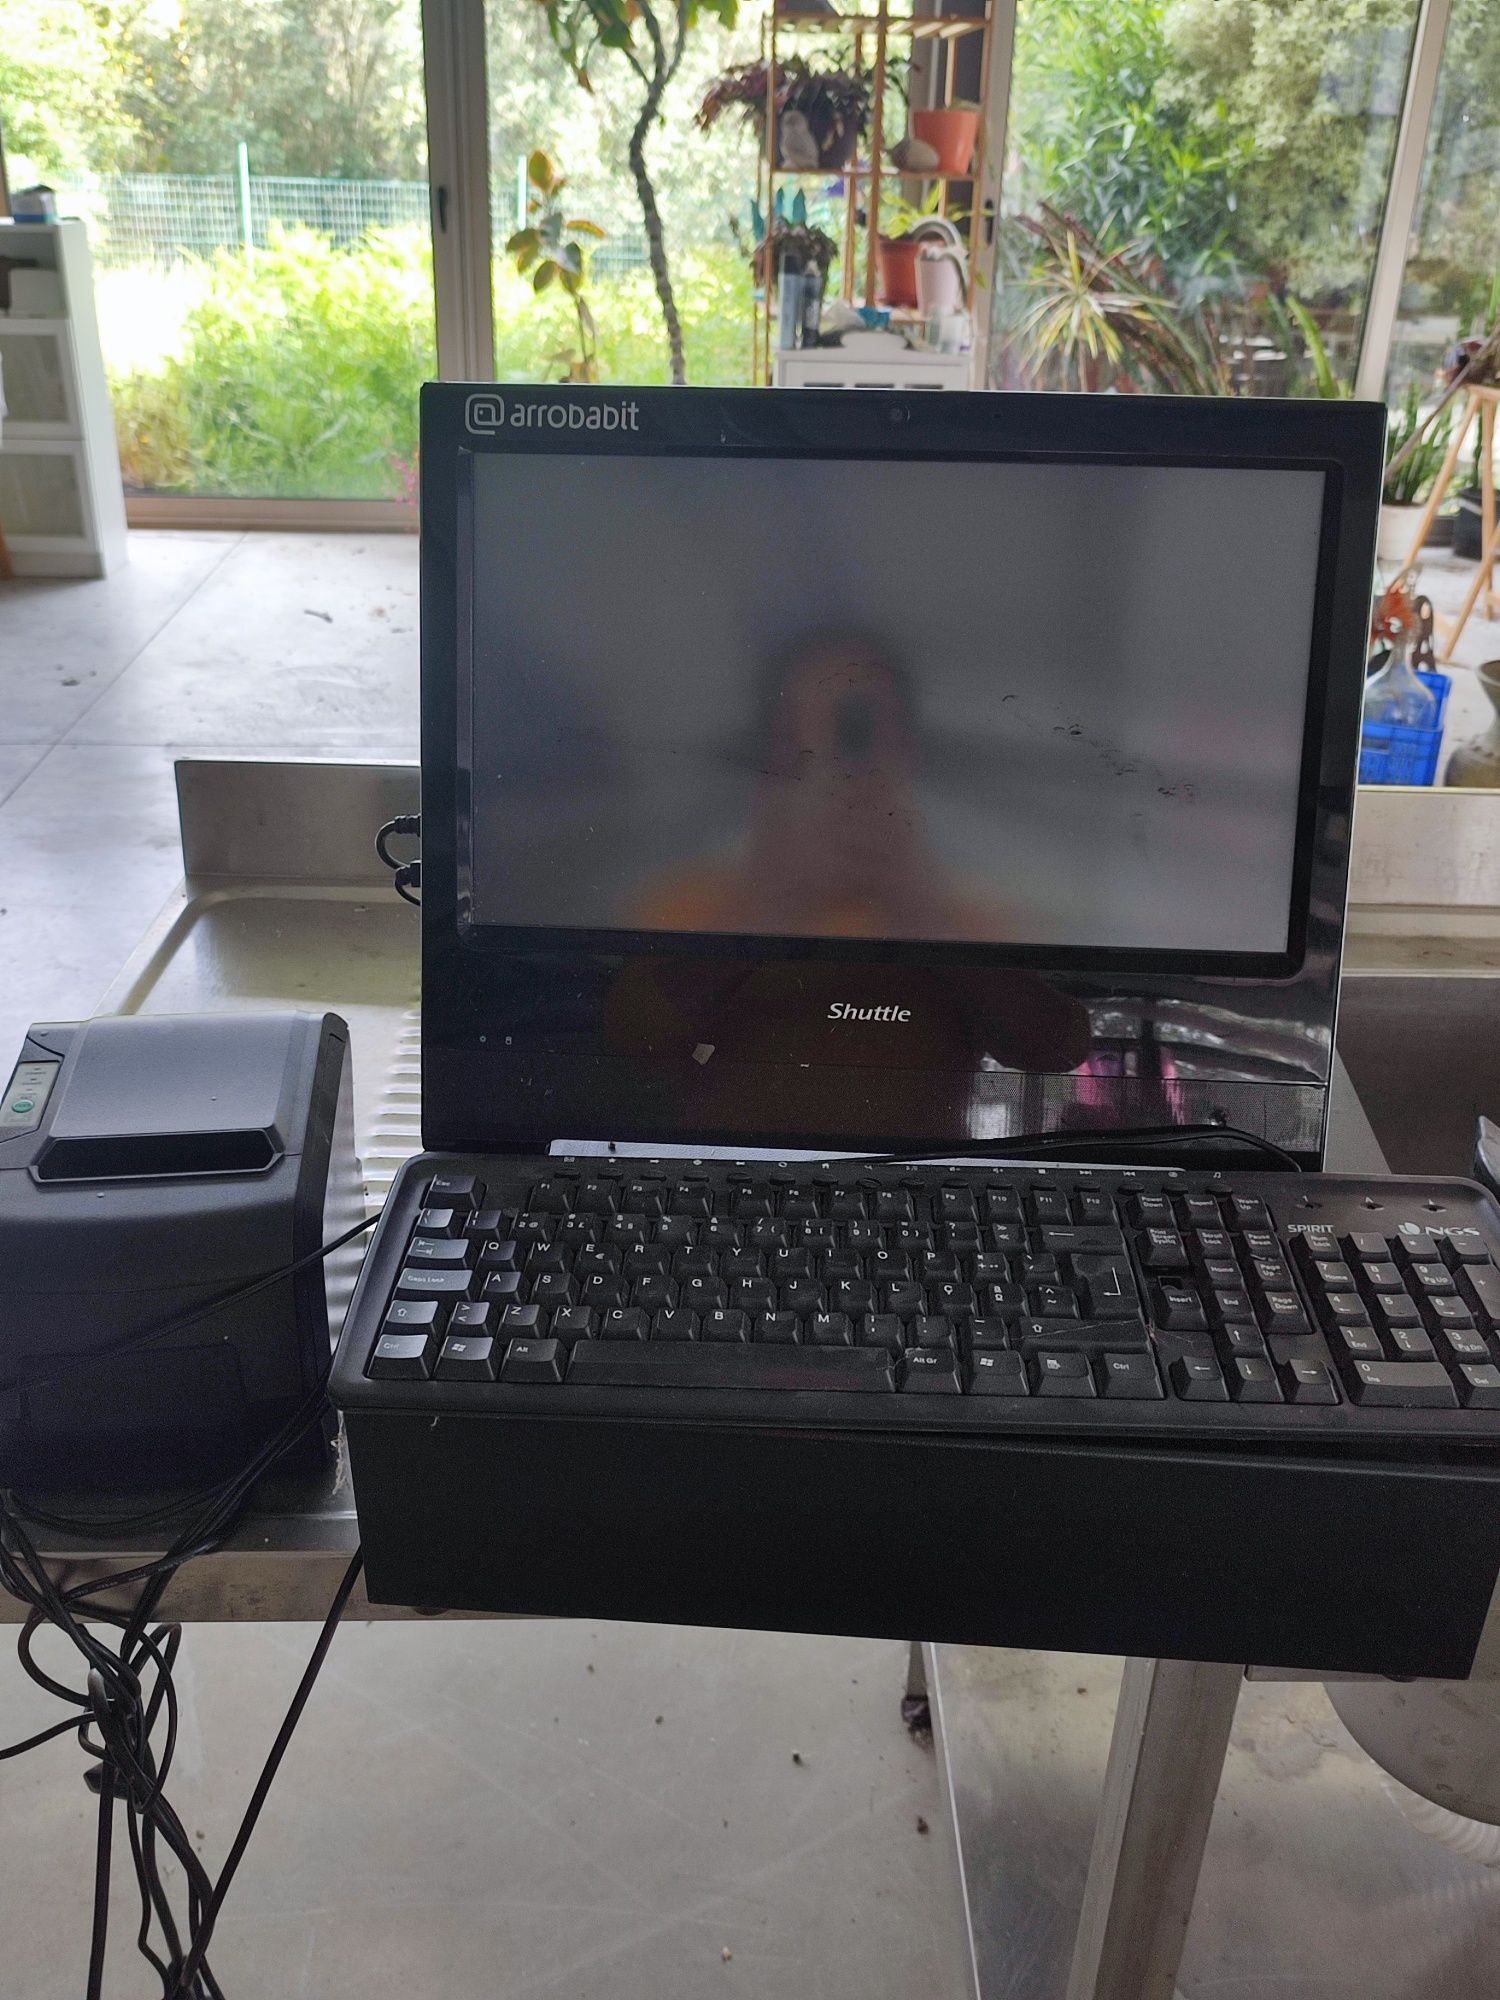 Caixa registadora com computador e impressora